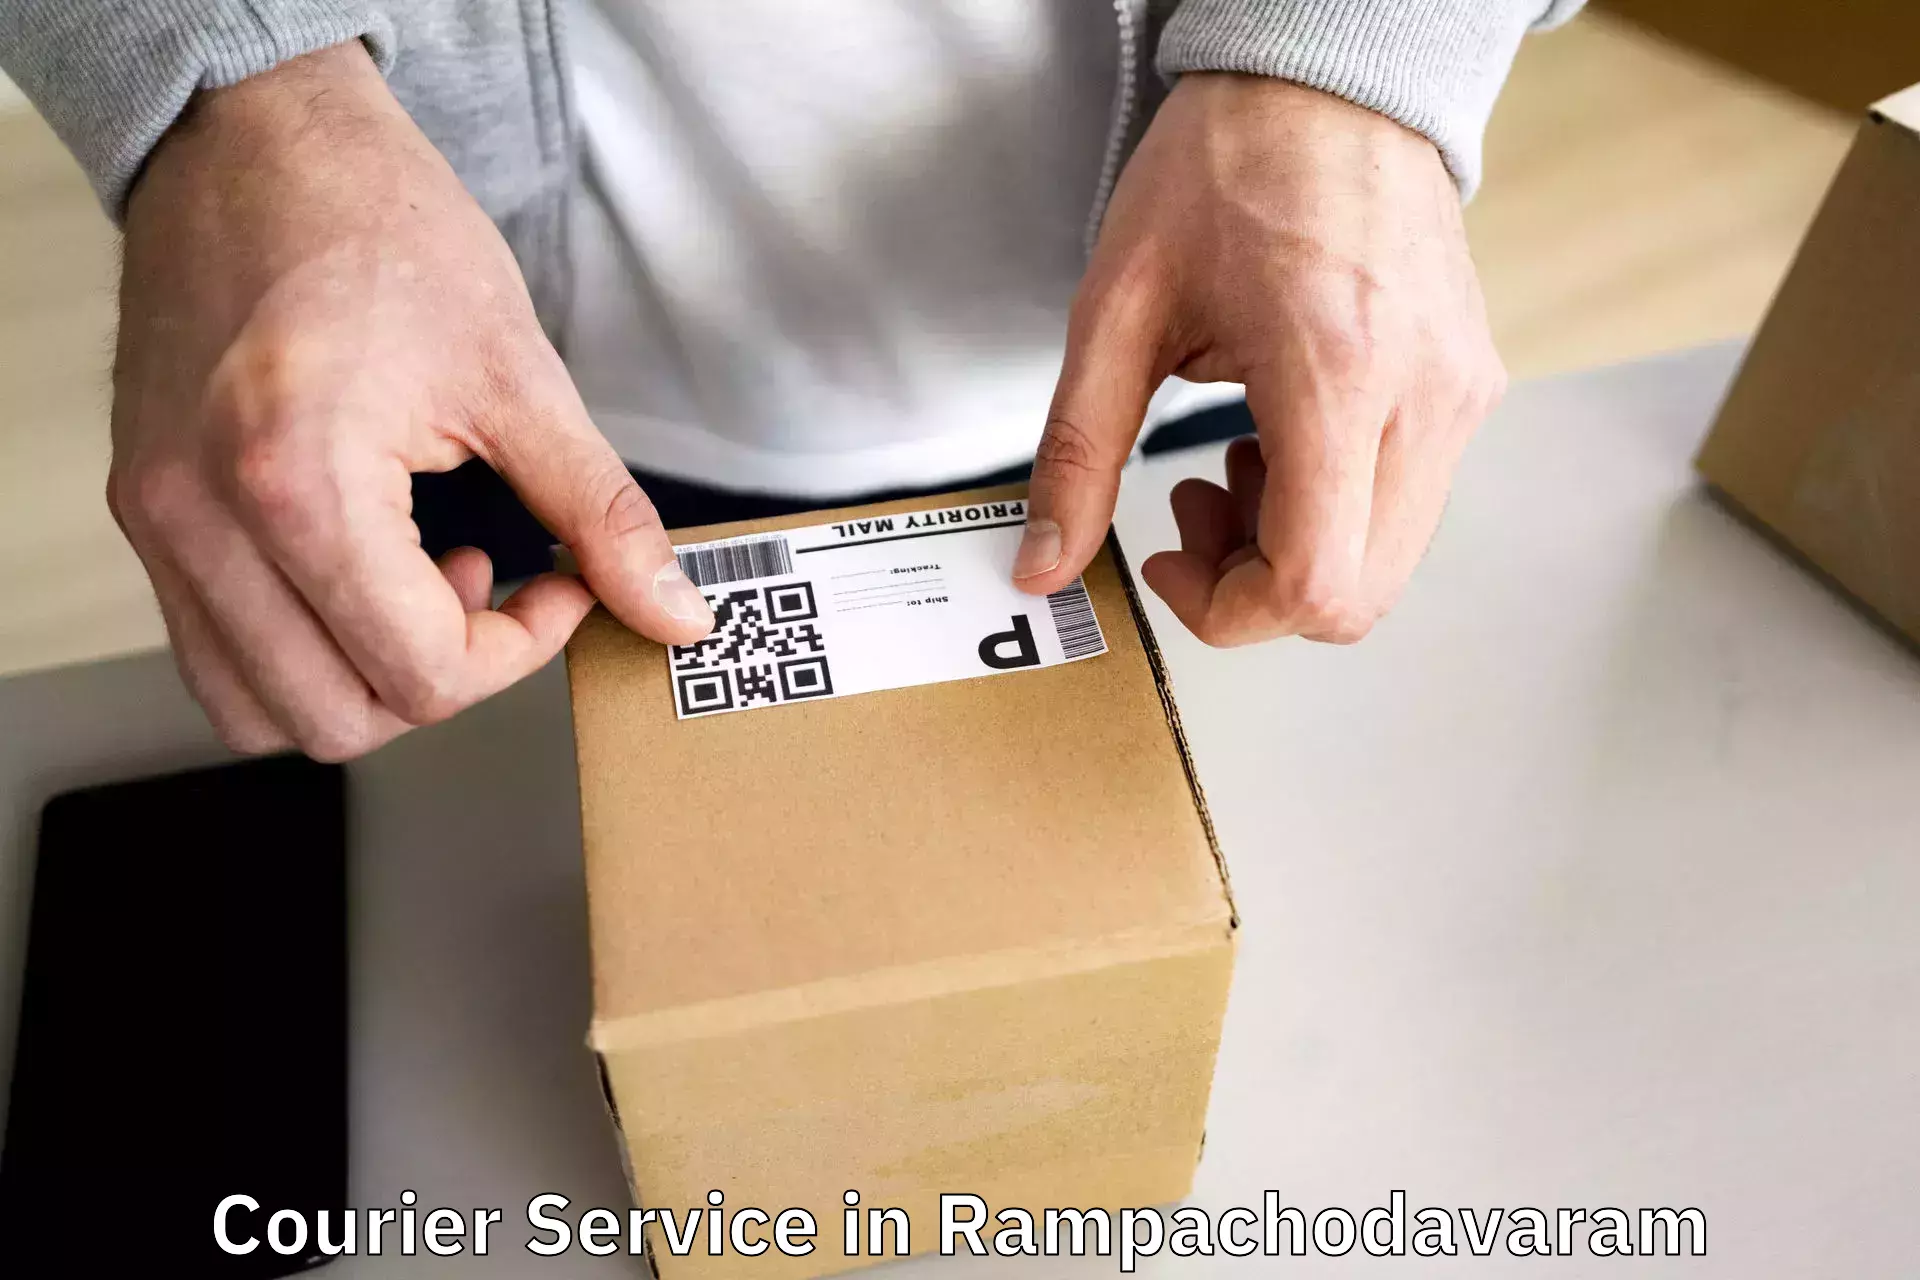 E-commerce fulfillment in Rampachodavaram